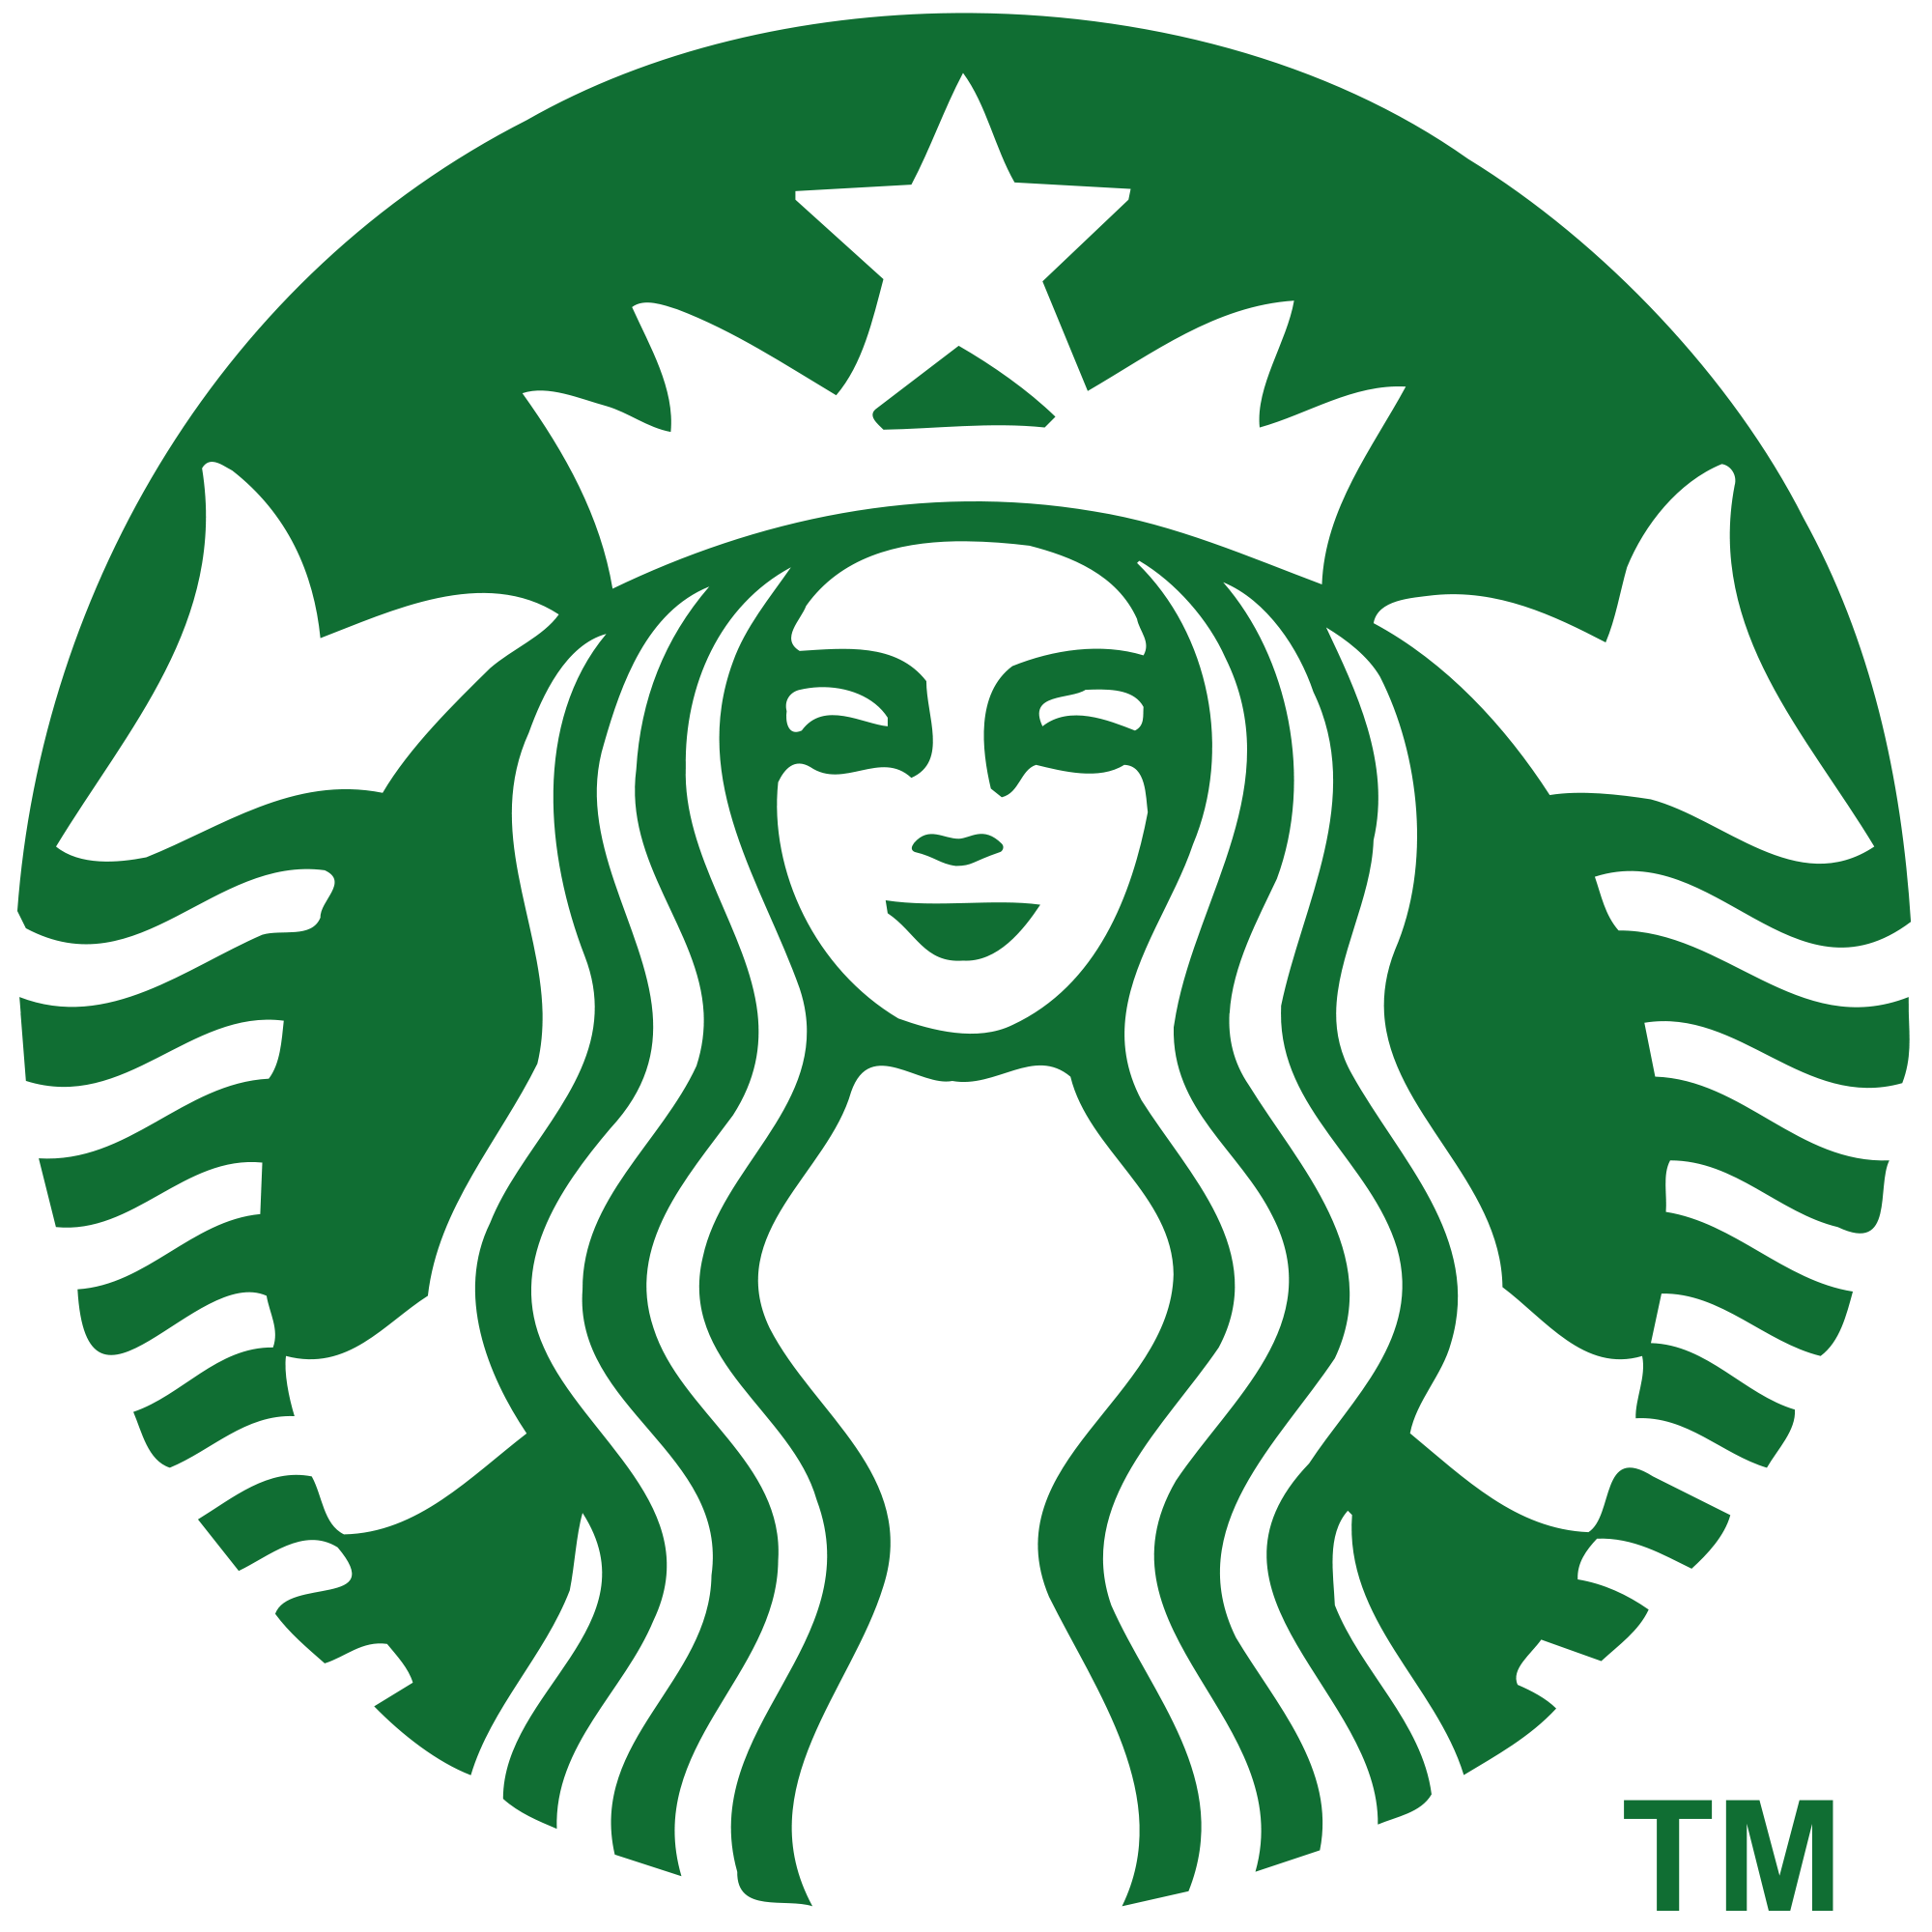 Starbucks Logo Wallpaper